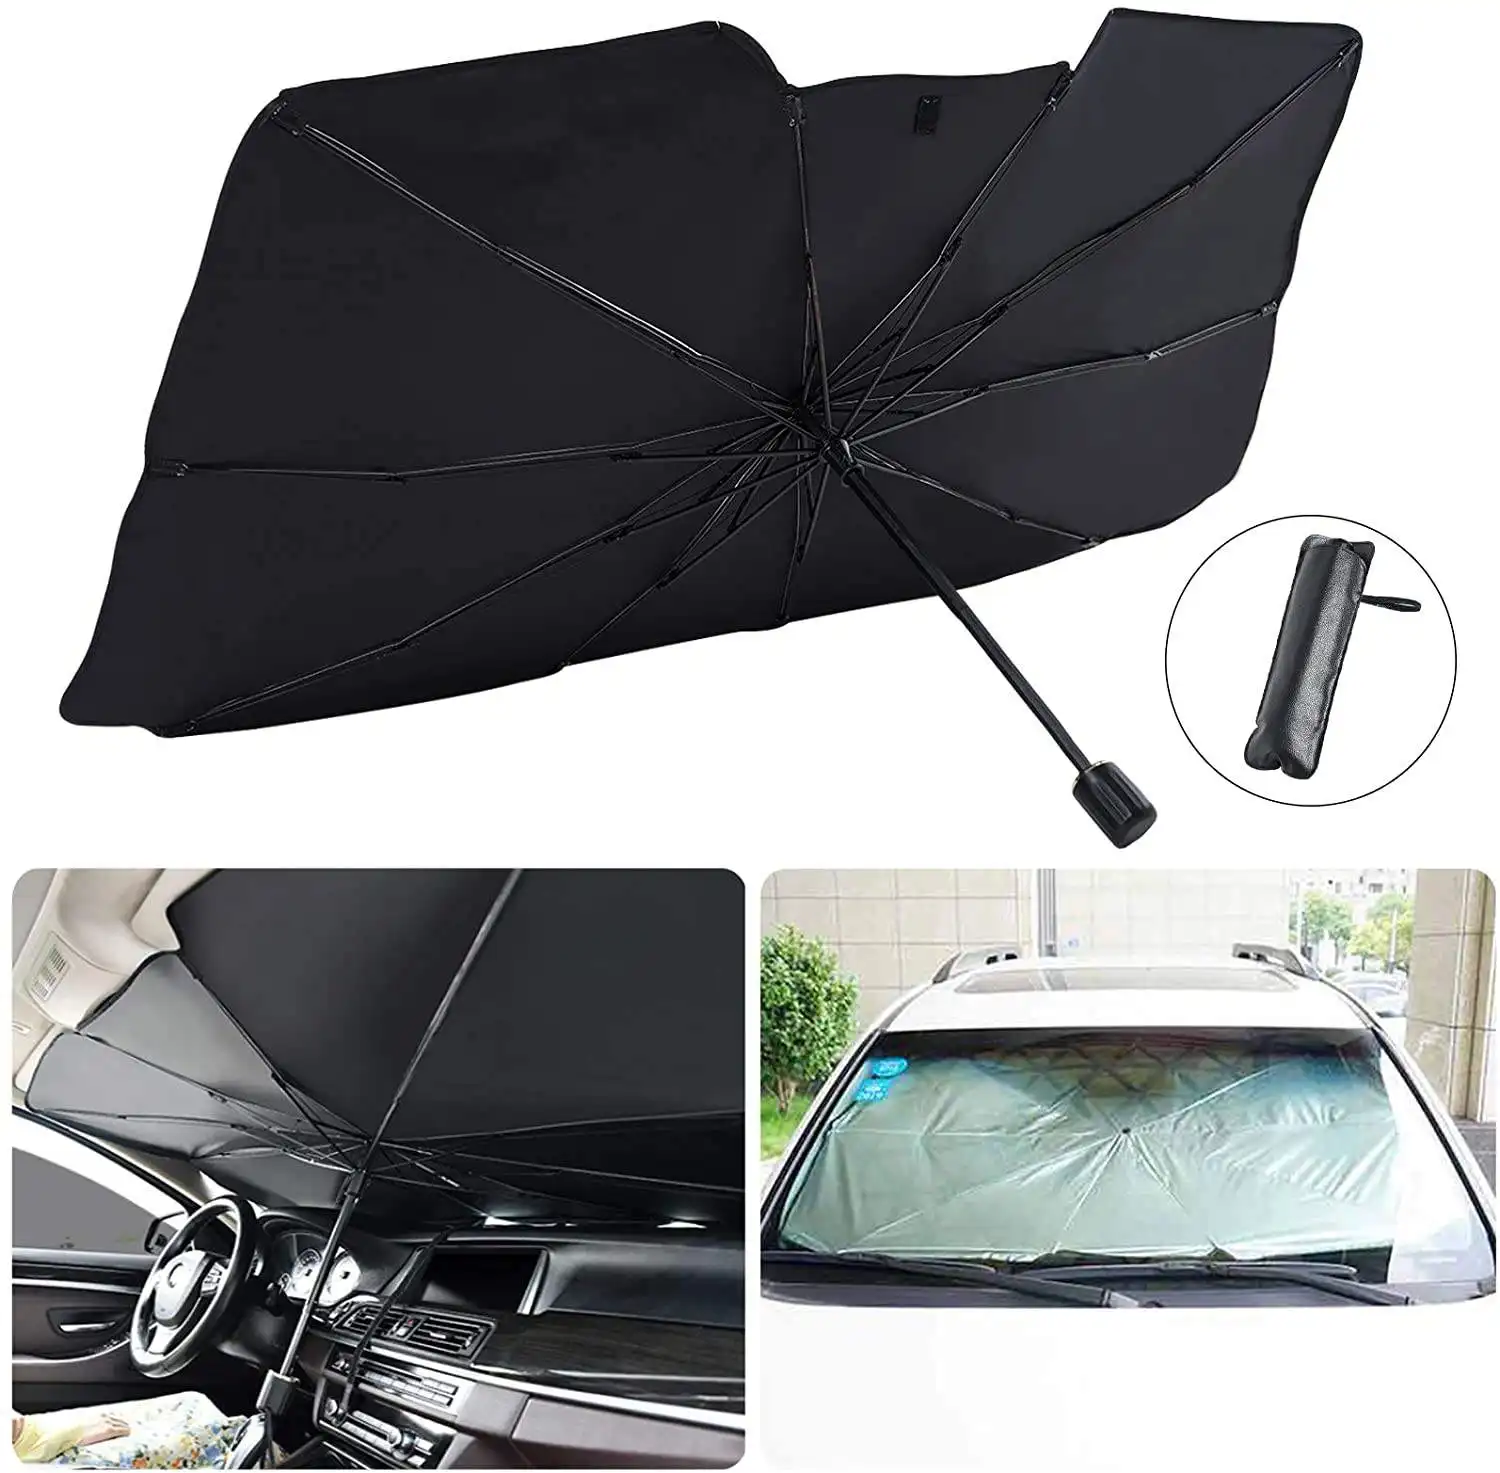 Автомобильный зонт, защита переднего лобового стекла автомобиля, складные автомобильные зонты, индивидуальные анти-ультрафиолетовые аксессуары, зонтик на лобовое стекло